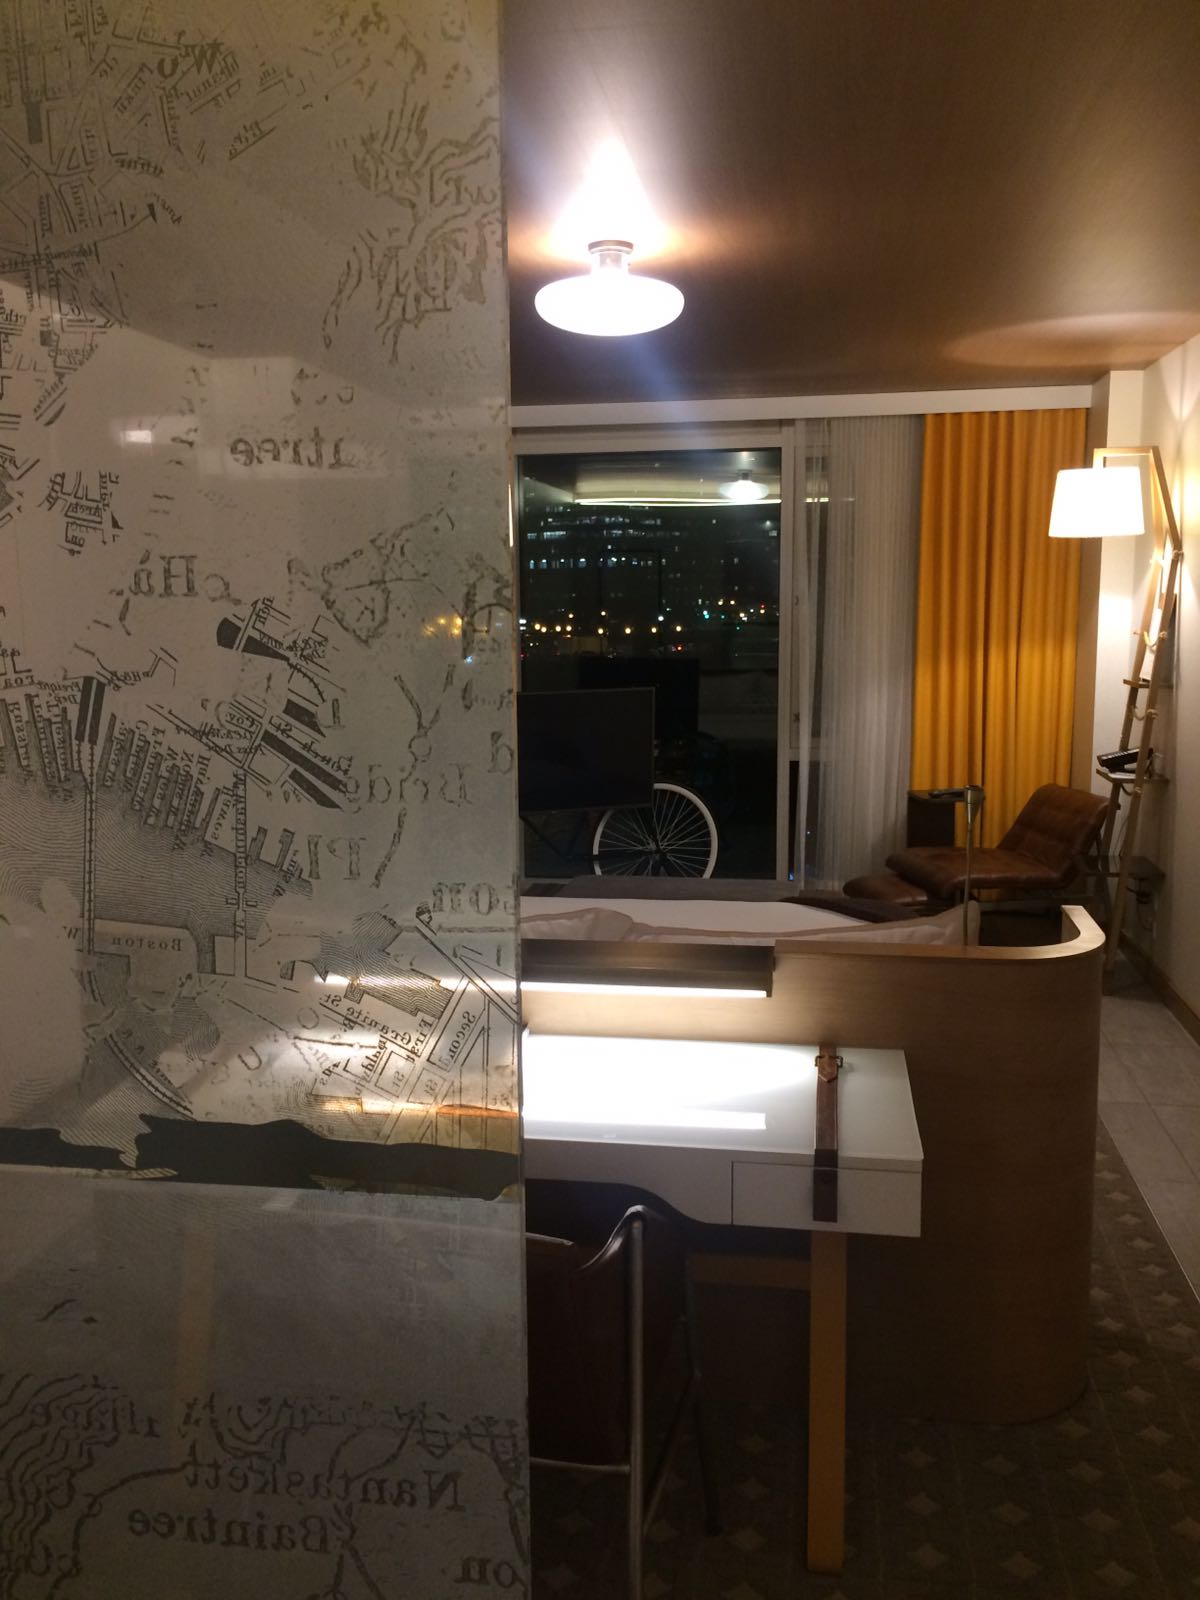 Editorin Hannah testet das Envoy Hotel in Bosten. Hier könnt ihr das Badezimmer sehen.